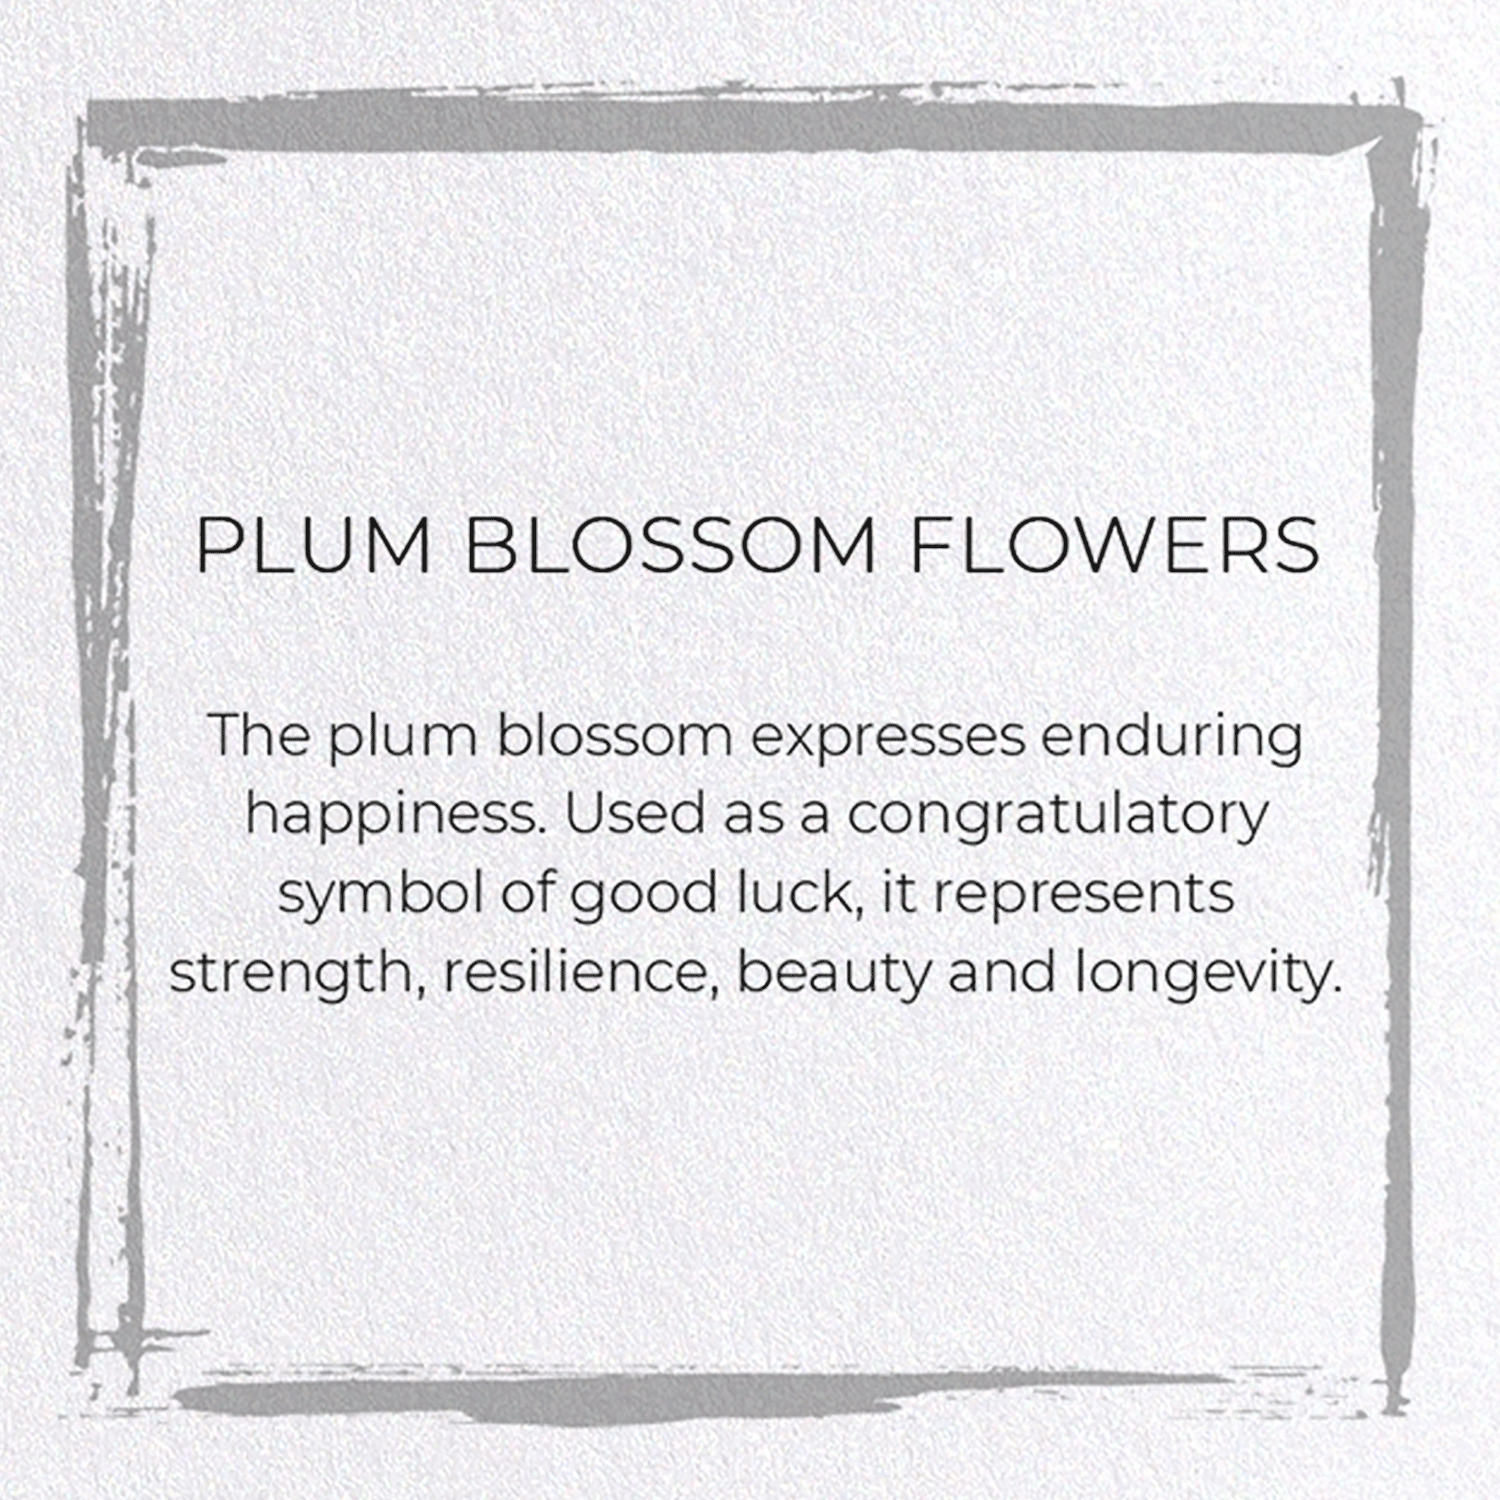 PLUM BLOSSOM FLOWERS